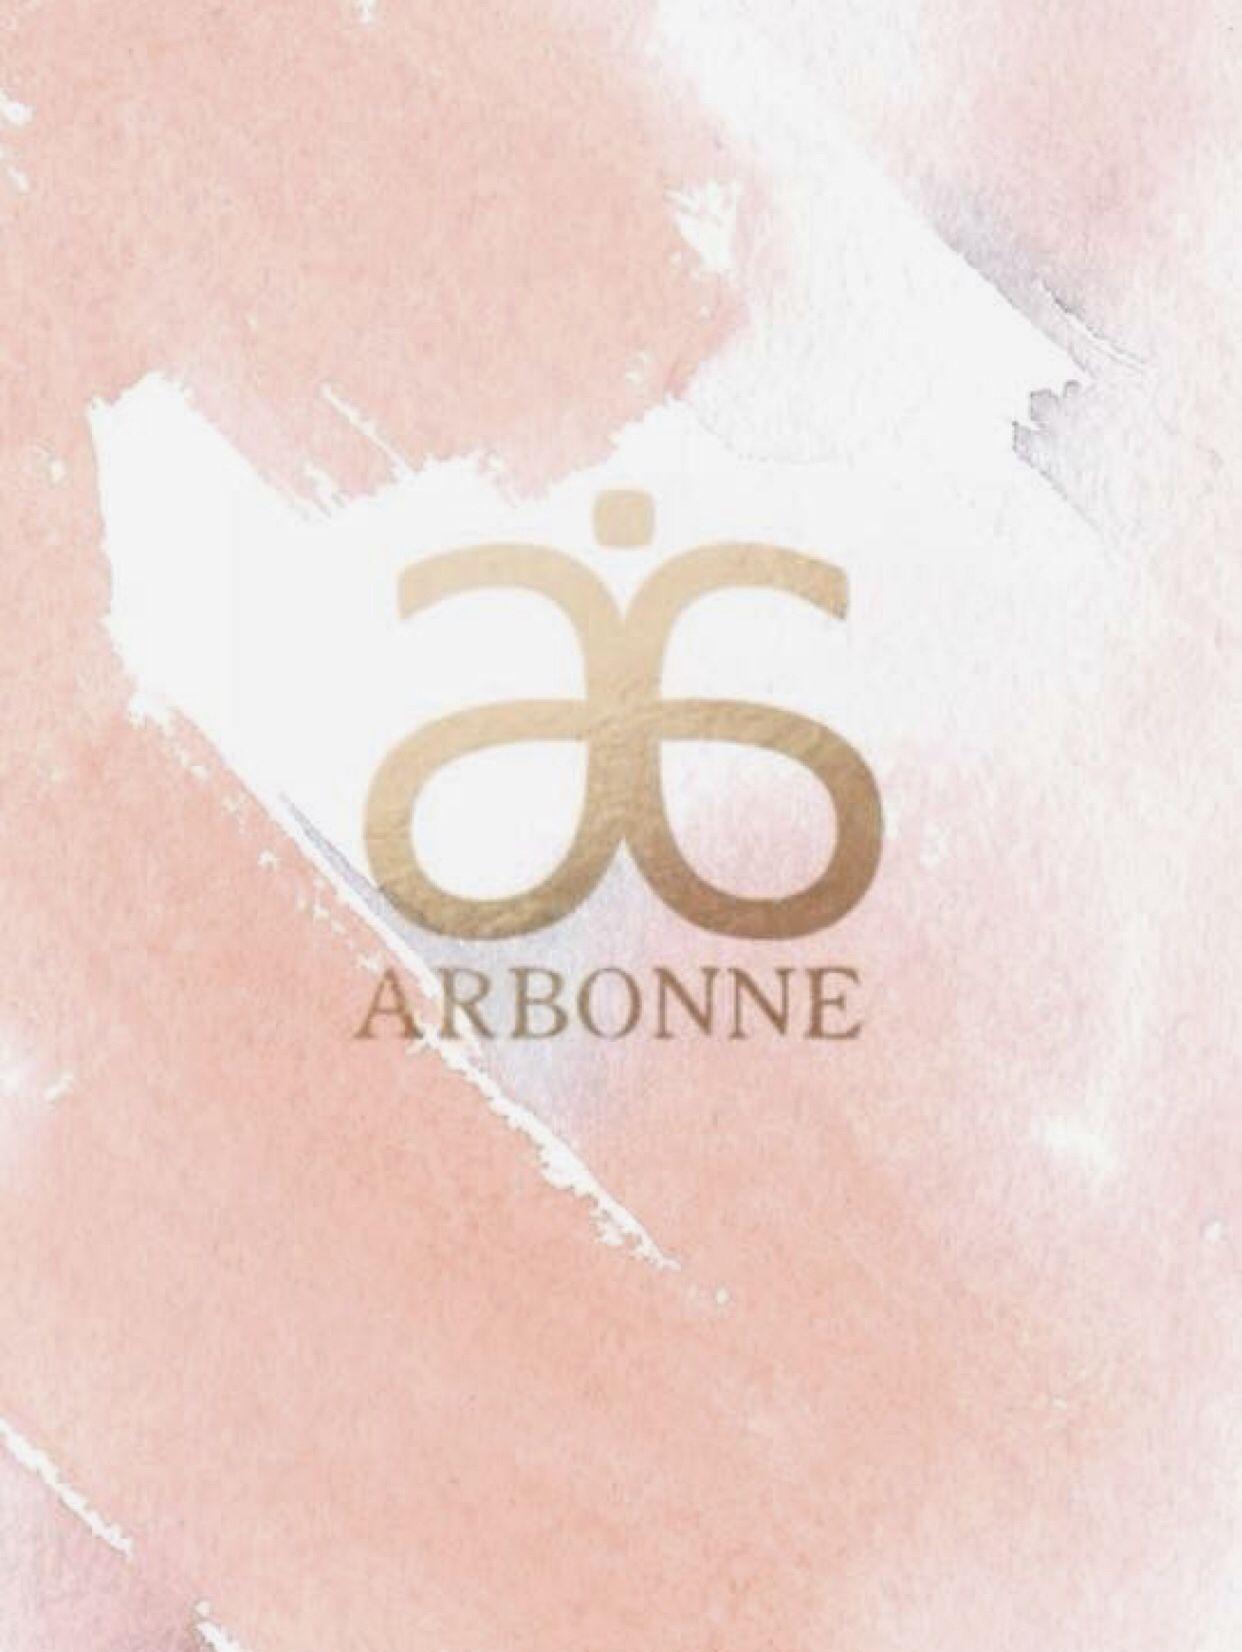 Arbonne Logo - A R B O N N E. Arbonne business